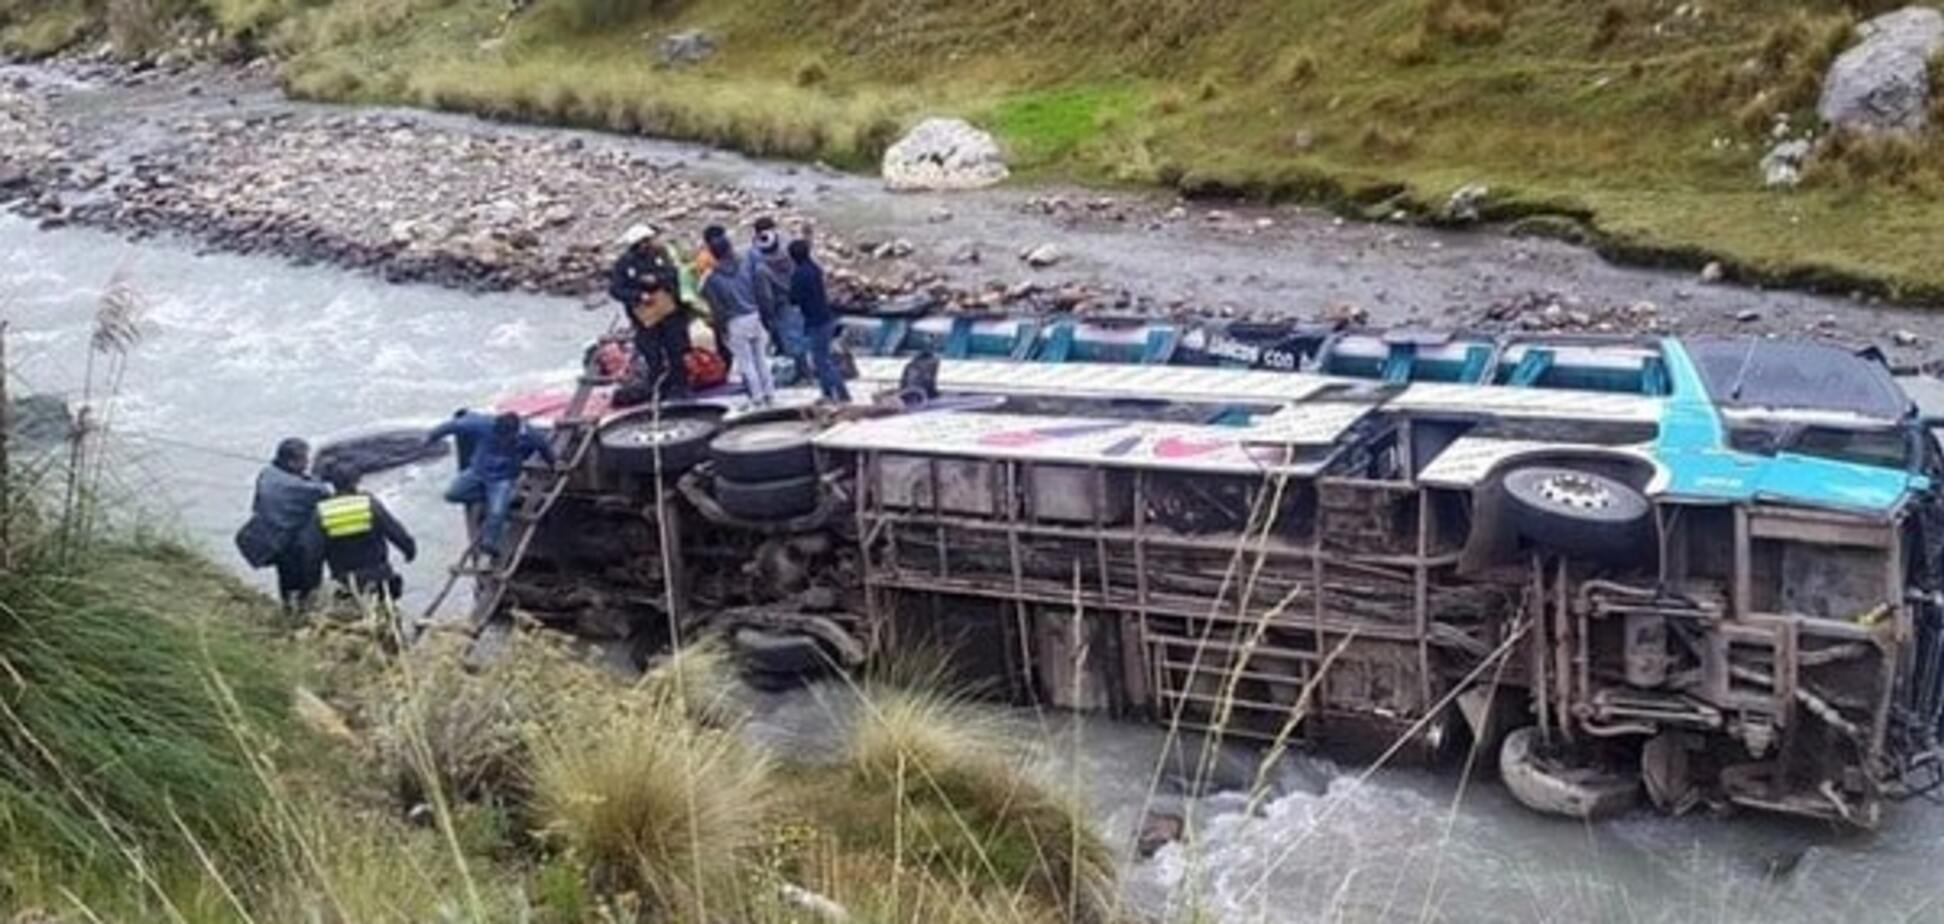 Множество жертв: в Перу автобус с пассажирами упал в пропасть